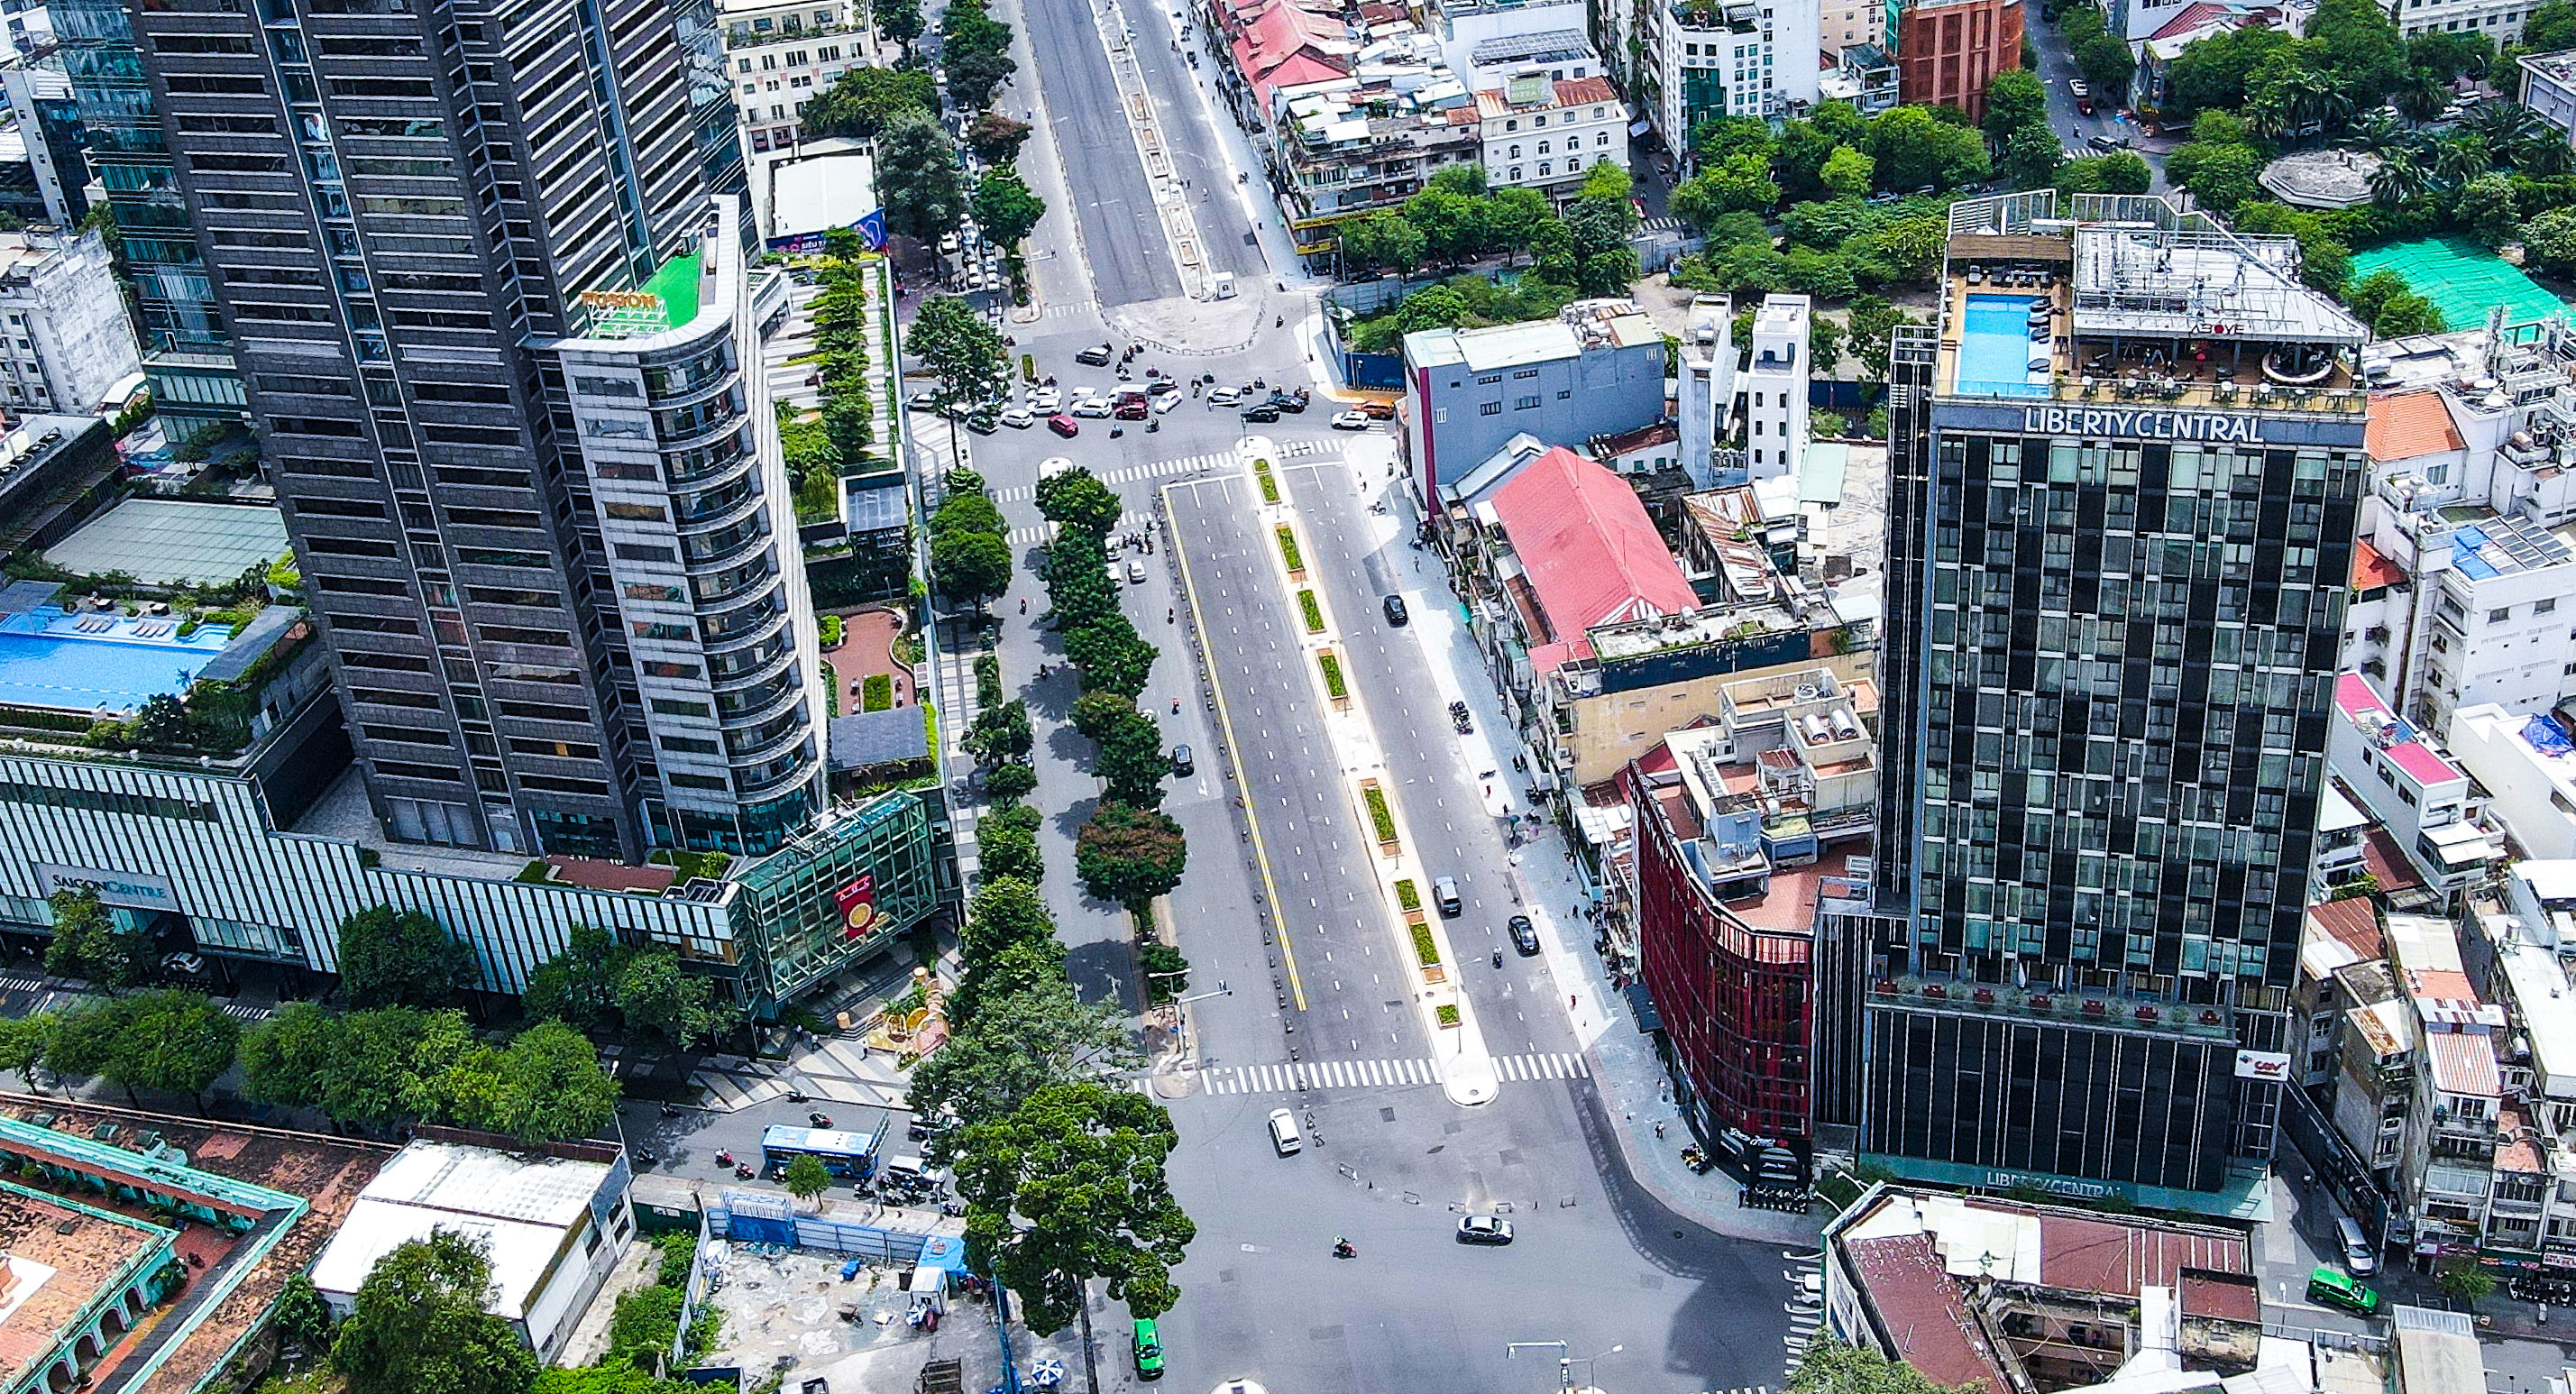 TP. HCM là trung tâm kinh tế, văn hóa và giải trí của Việt Nam, với các khu mua sắm, địa điểm ẩm thực và các công trình kiến trúc nổi tiếng. Hãy xem hình ảnh để khám phá thêm về thành phố này.